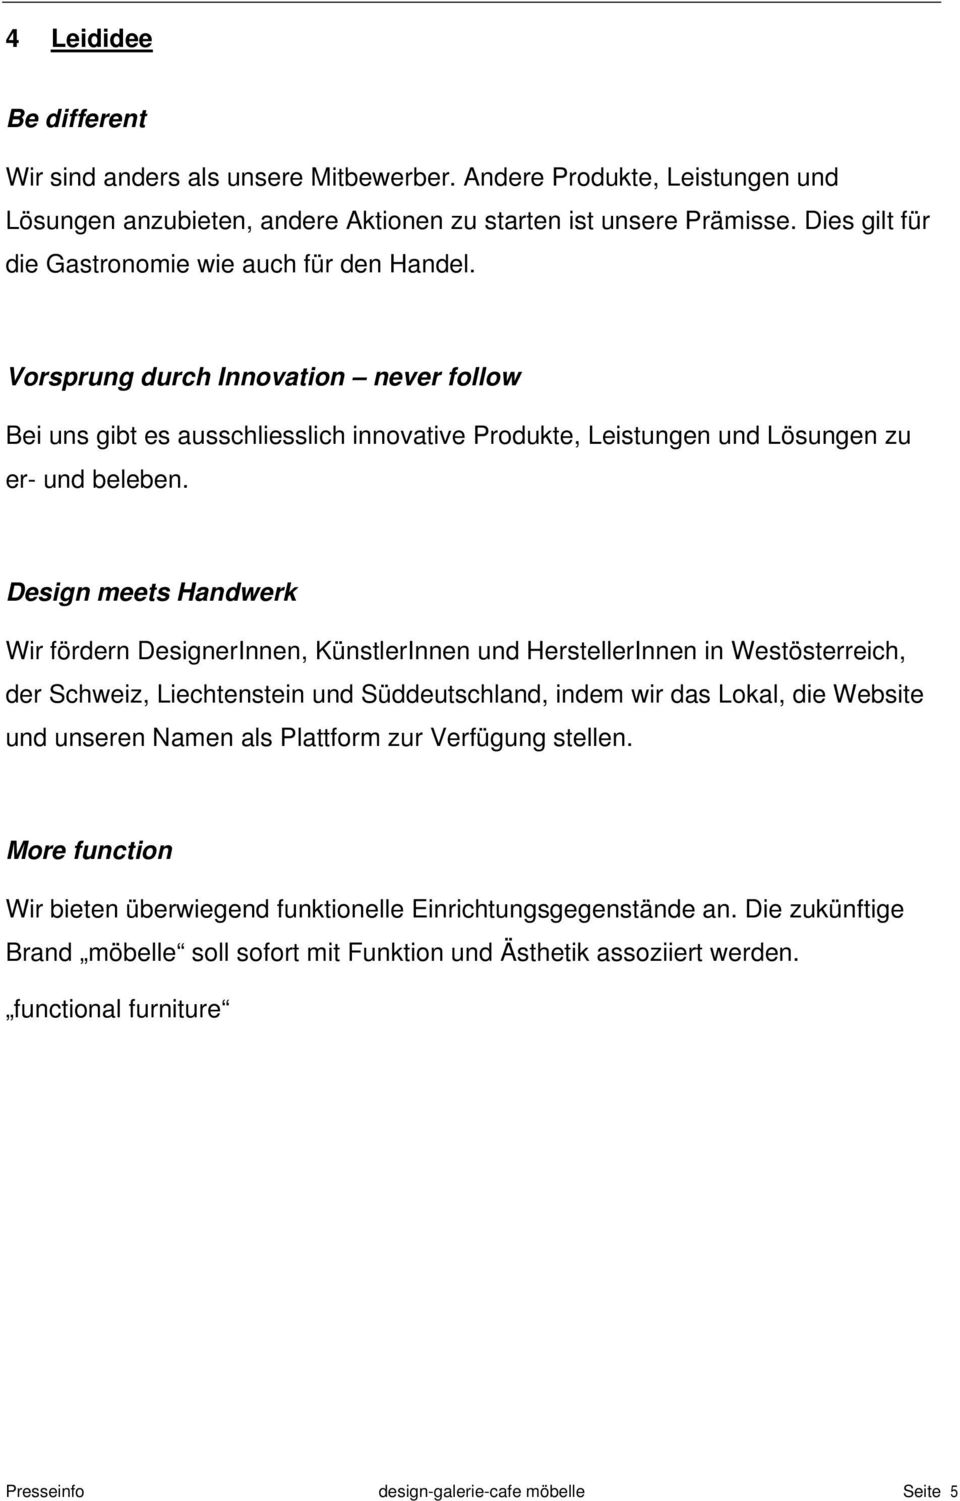 Design meets Handwerk Wir fördern DesignerInnen, KünstlerInnen und HerstellerInnen in Westösterreich, der Schweiz, Liechtenstein und Süddeutschland, indem wir das Lokal, die Website und unseren Namen